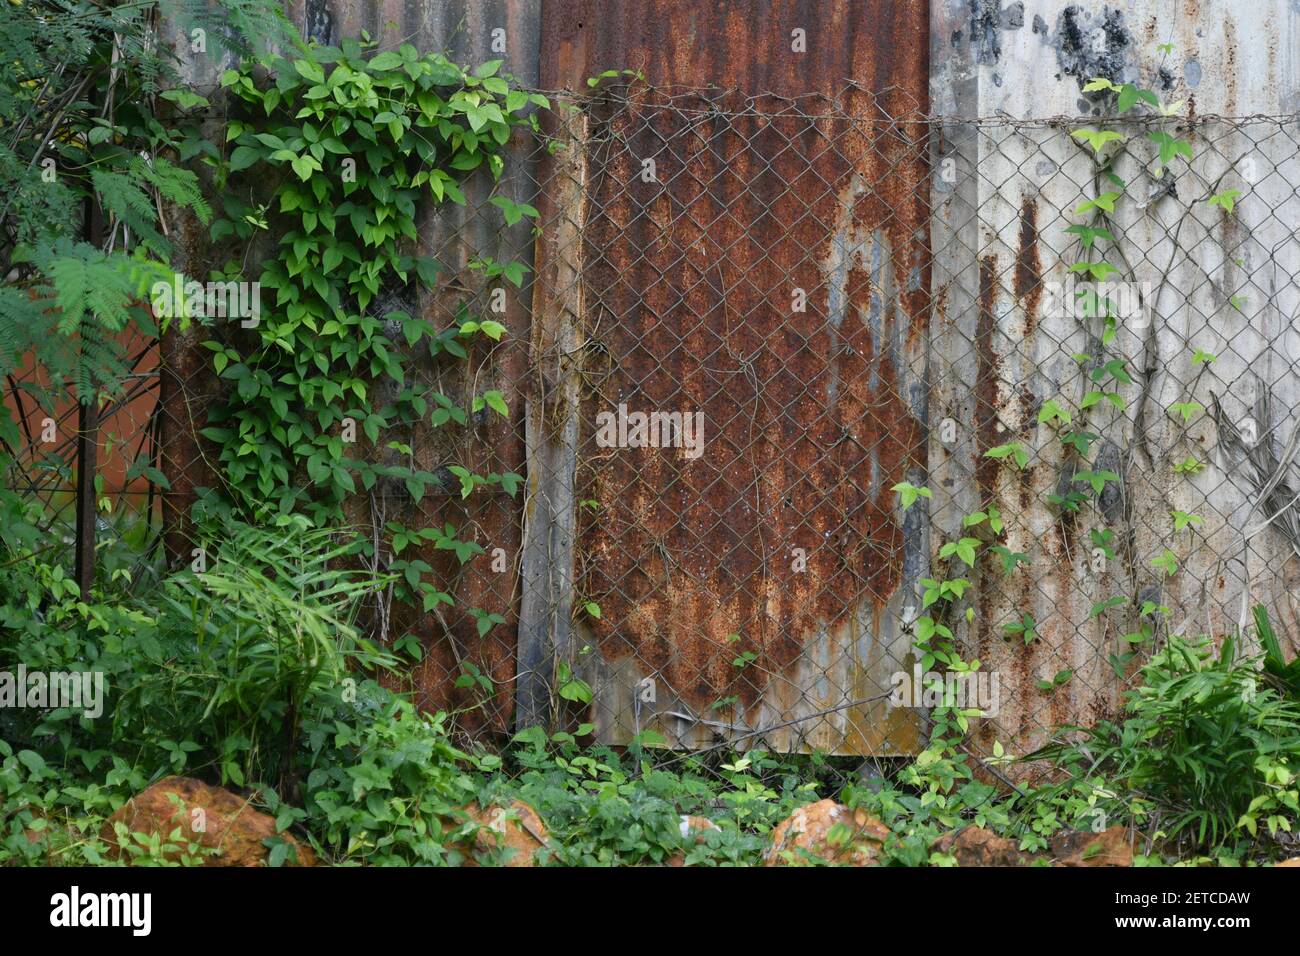 Les plantes et les feuilles de vigne poussent sur une vieille clôture en étain rouillé. Banque D'Images